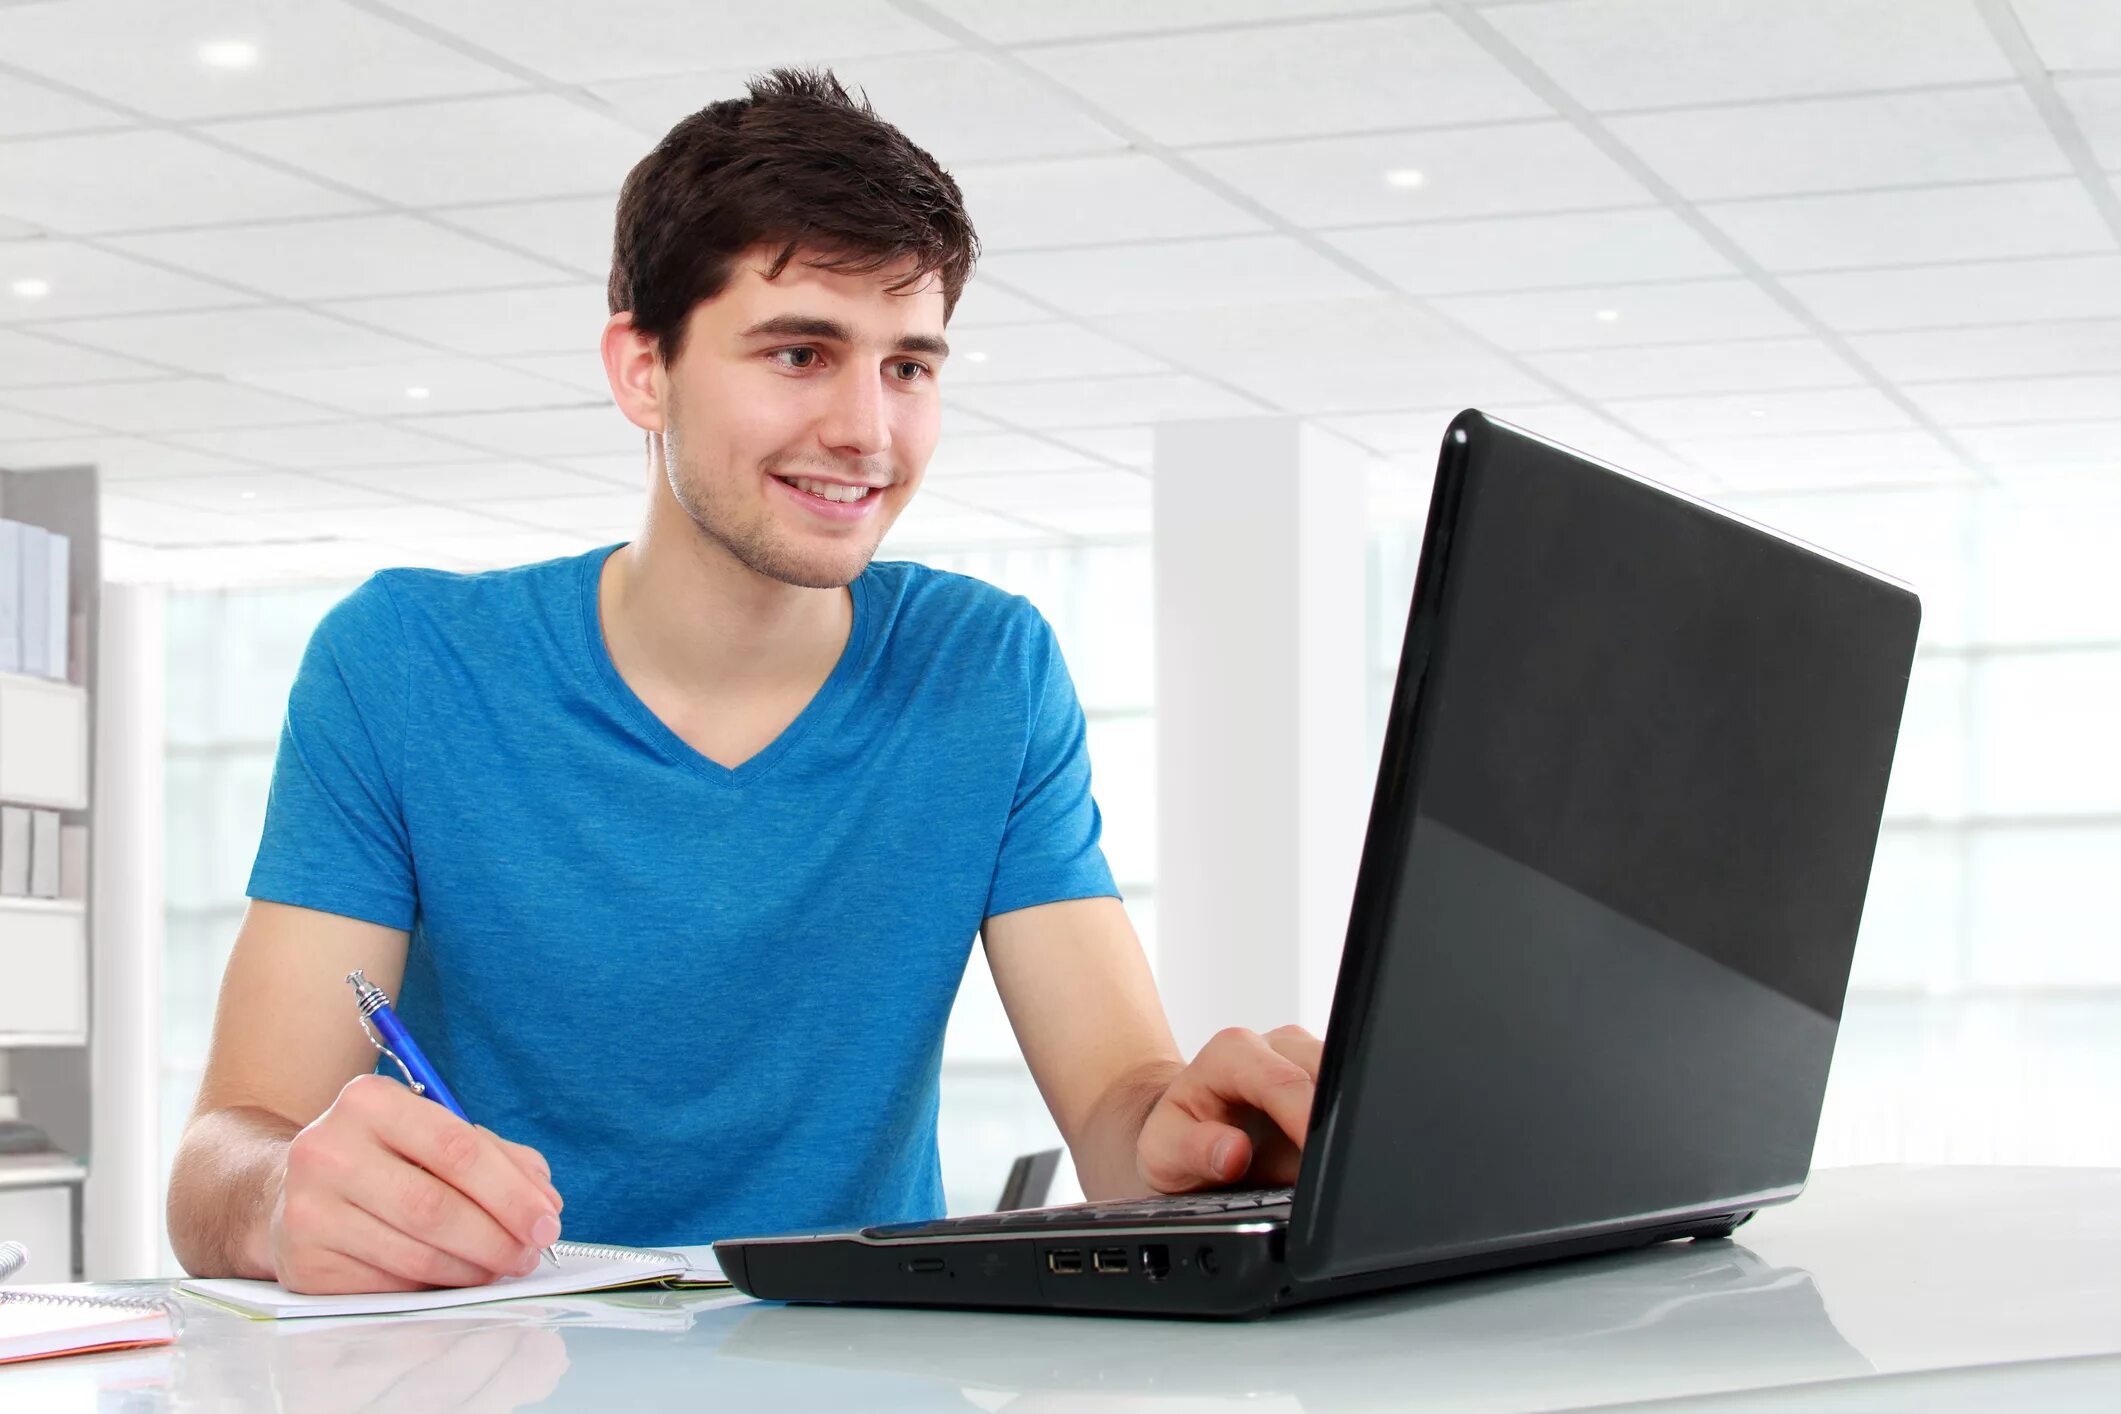 Students windows. Человек с ноутбуком. Человек за компьютером. Человек зам компьютером. Компьютер и человек.